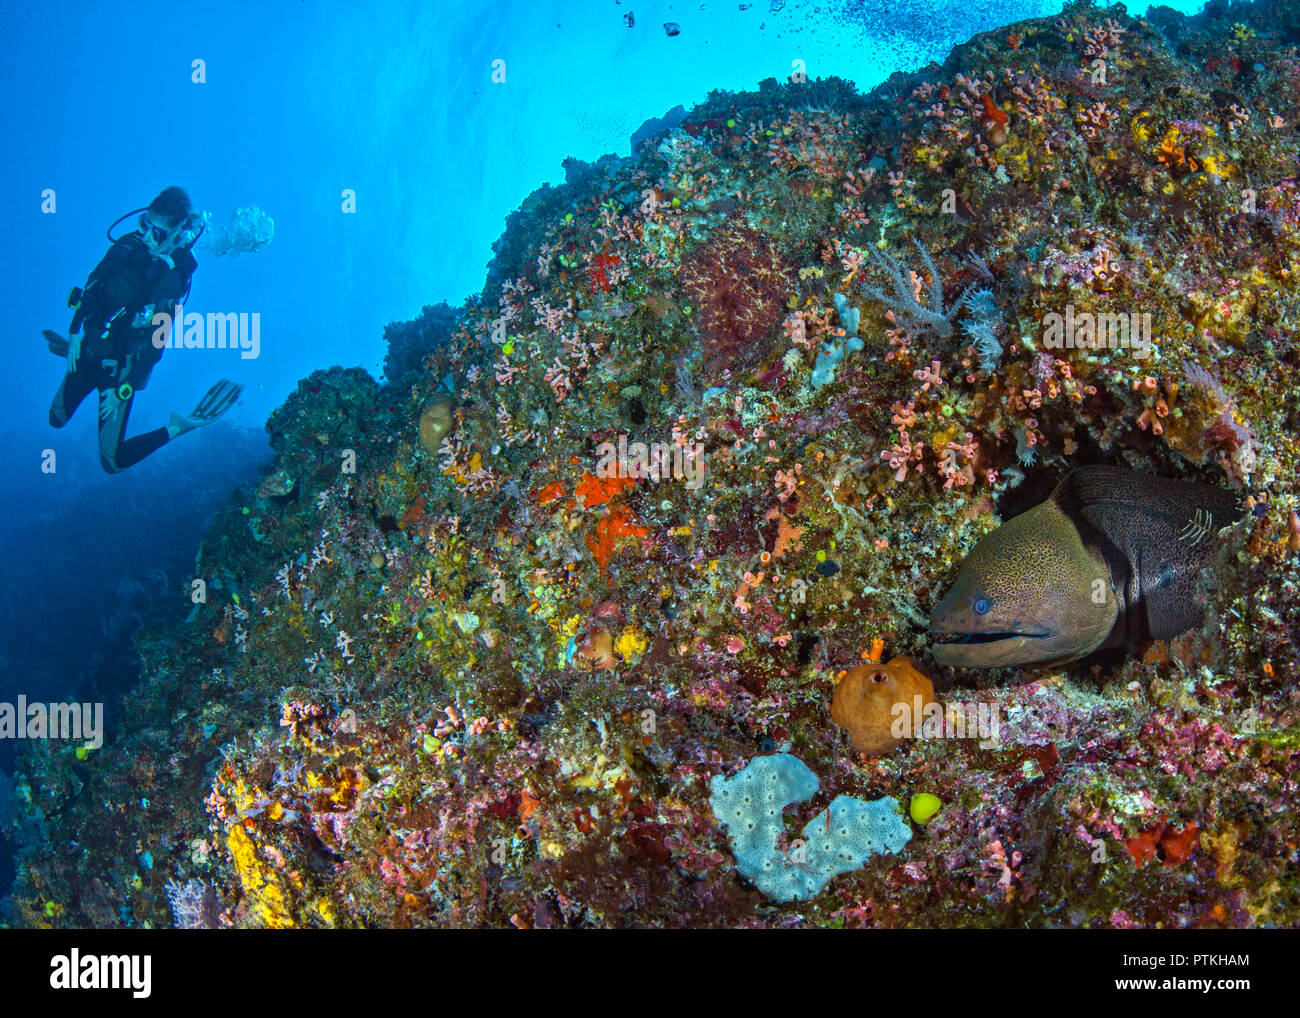 Grüne Muränen Gymnothorax (COI) im Korallenriff mit Taucher in blue water Hintergrund. Spratly Inseln im Südchinesischen Meer. Stockfoto